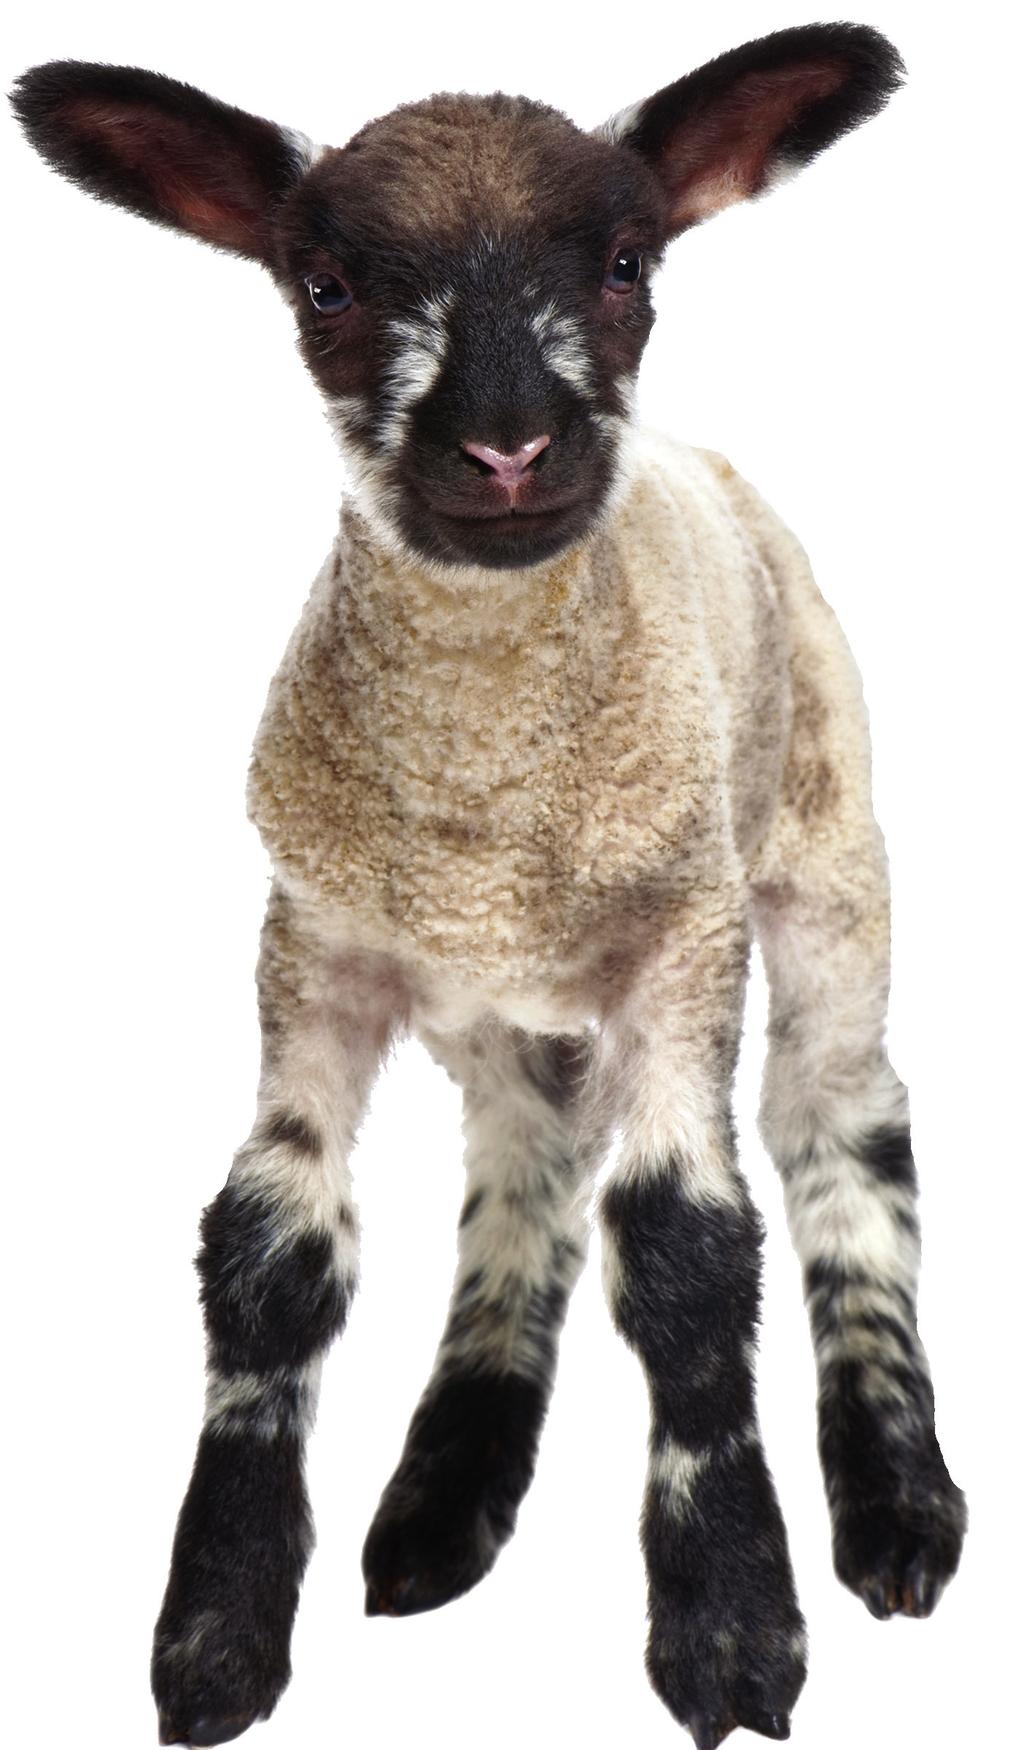 A SHEEP